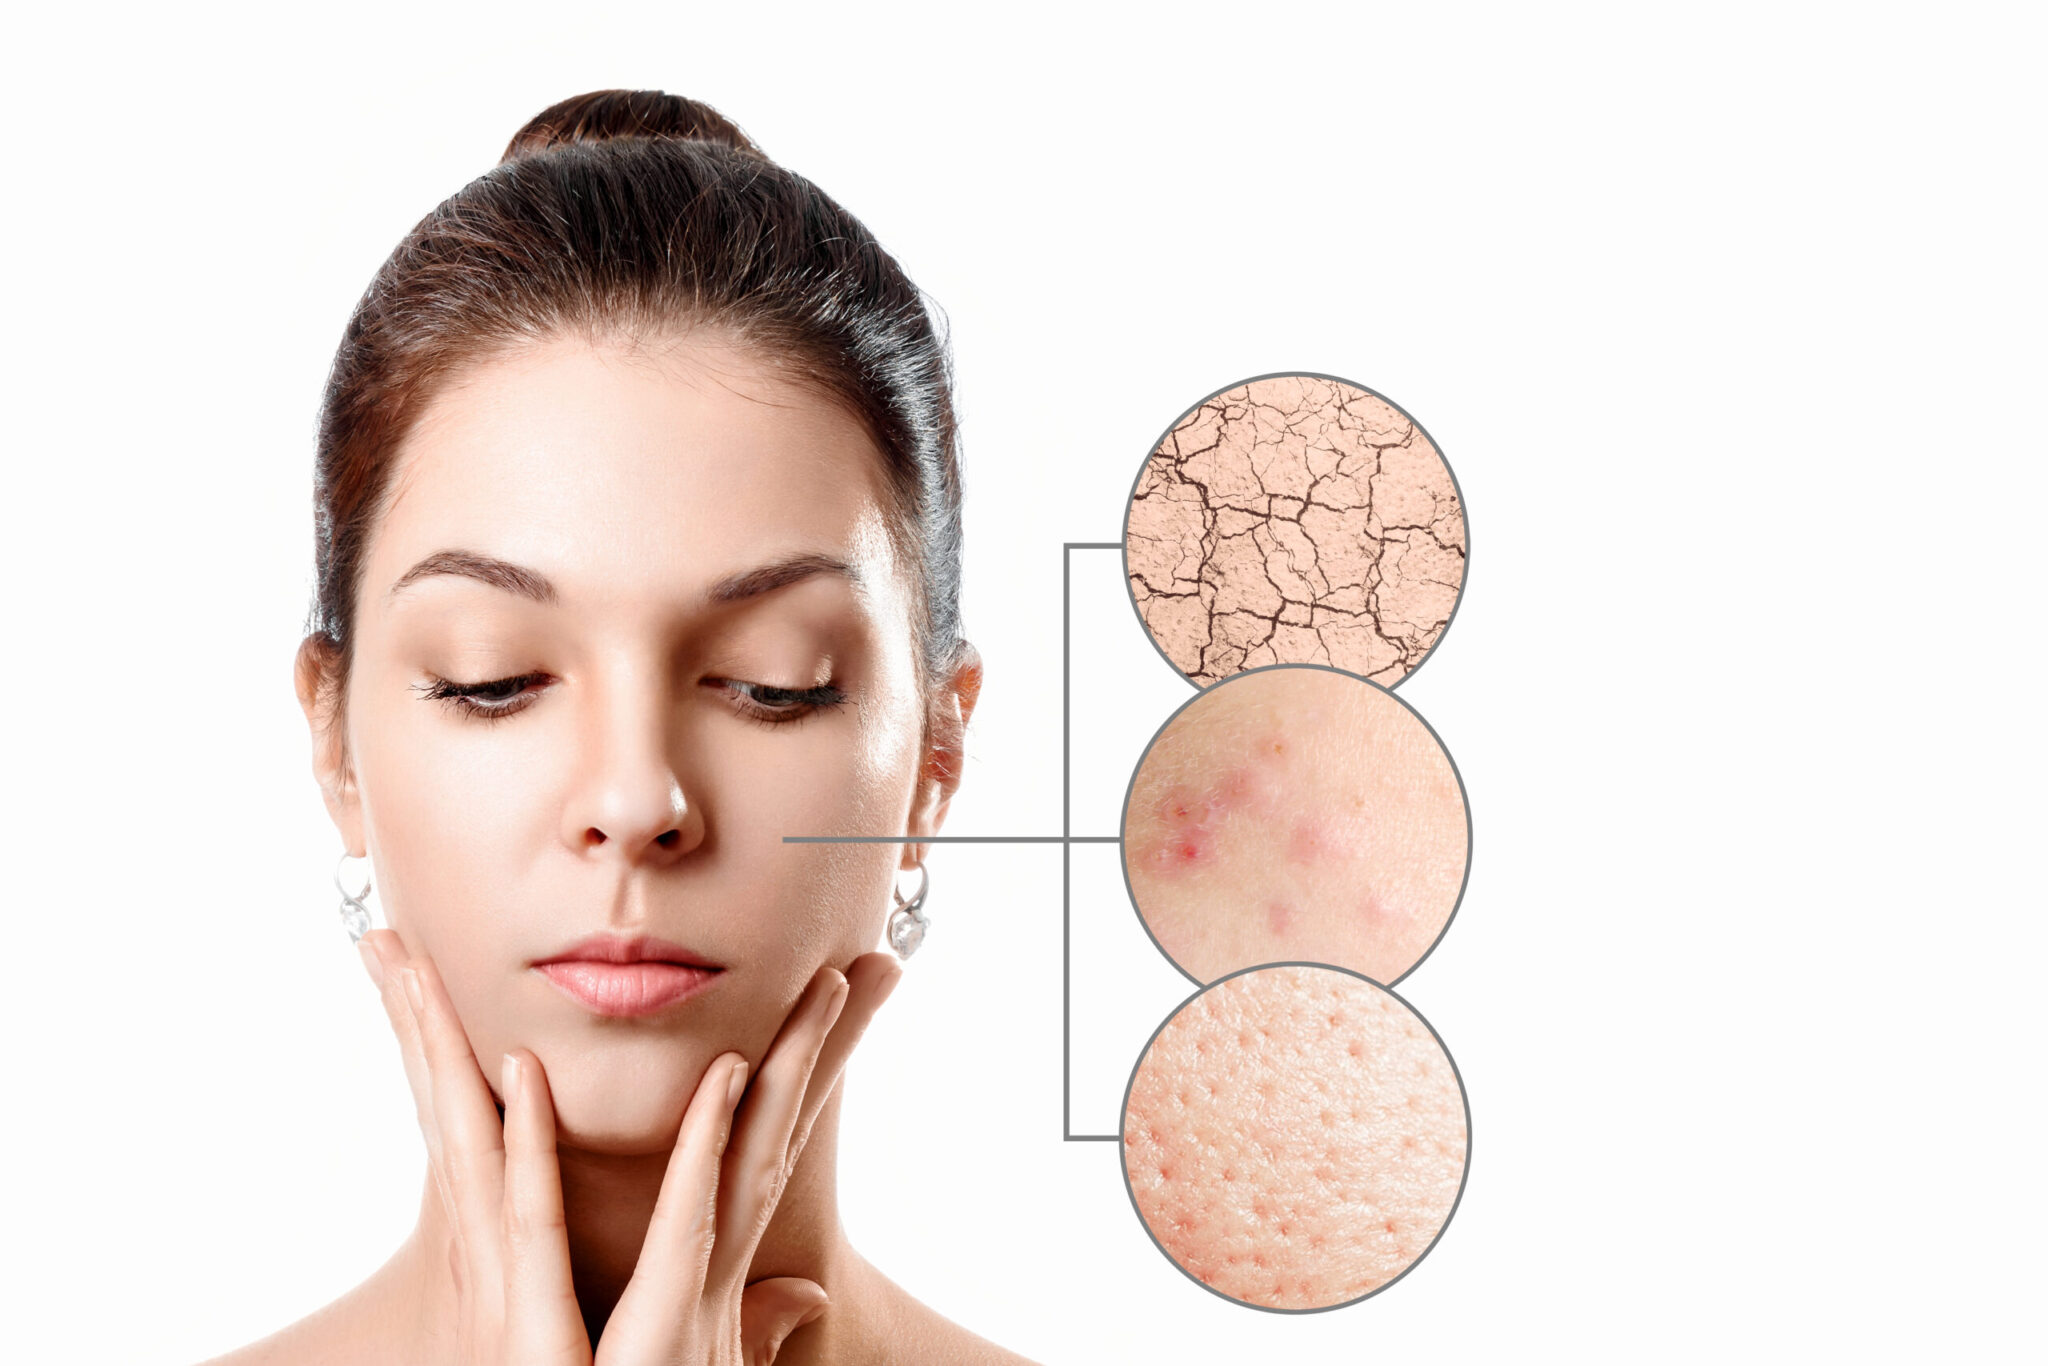 Di adiós al daño físico y emocional provocado por el acné: los mejores tratamientos